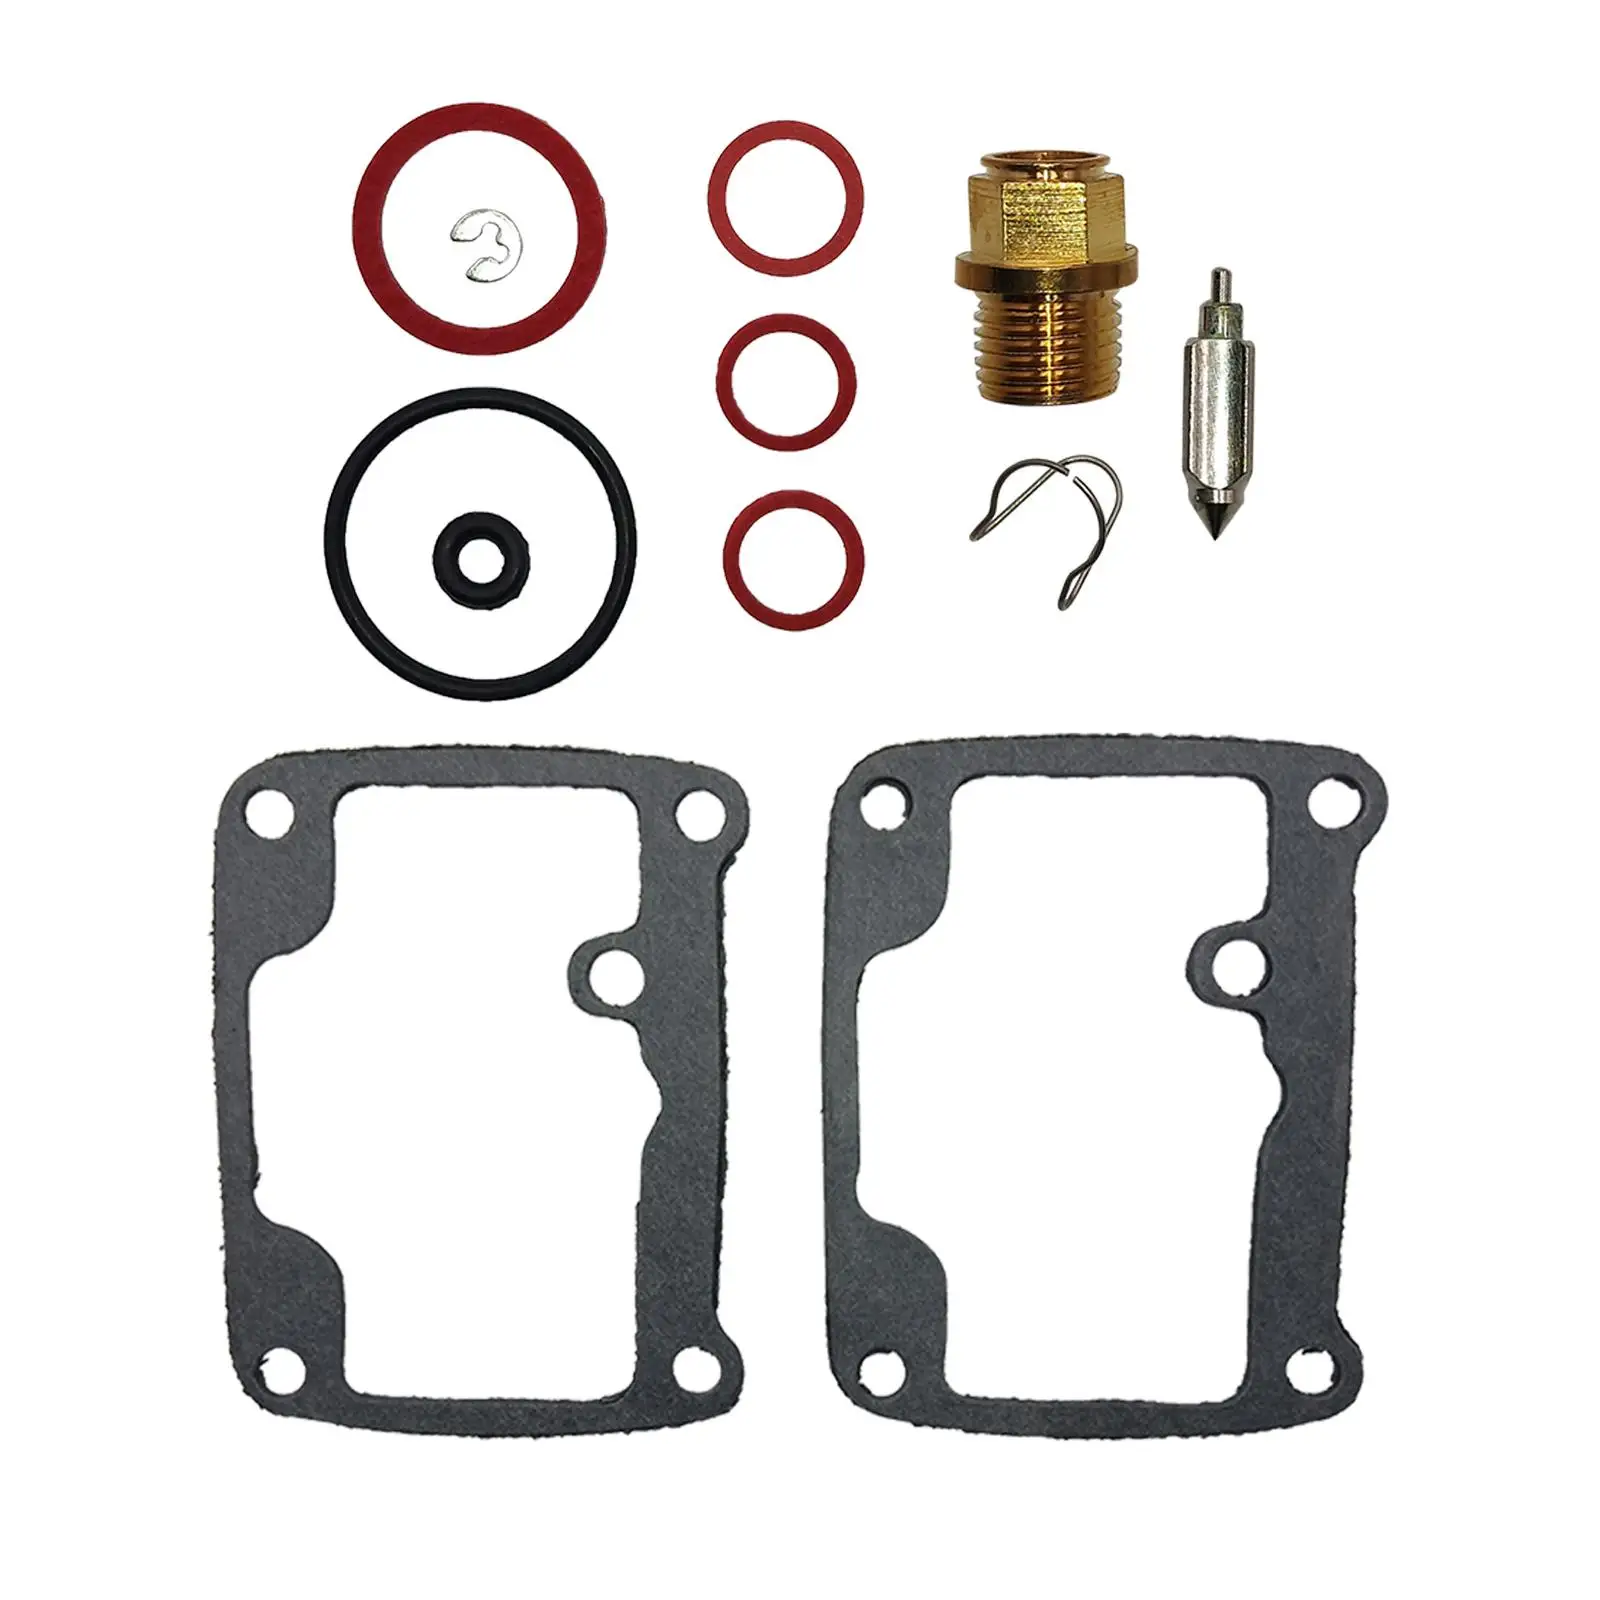 Professional Carb Carburetor Rebuild Repair Kit Direct Replaces, Easy